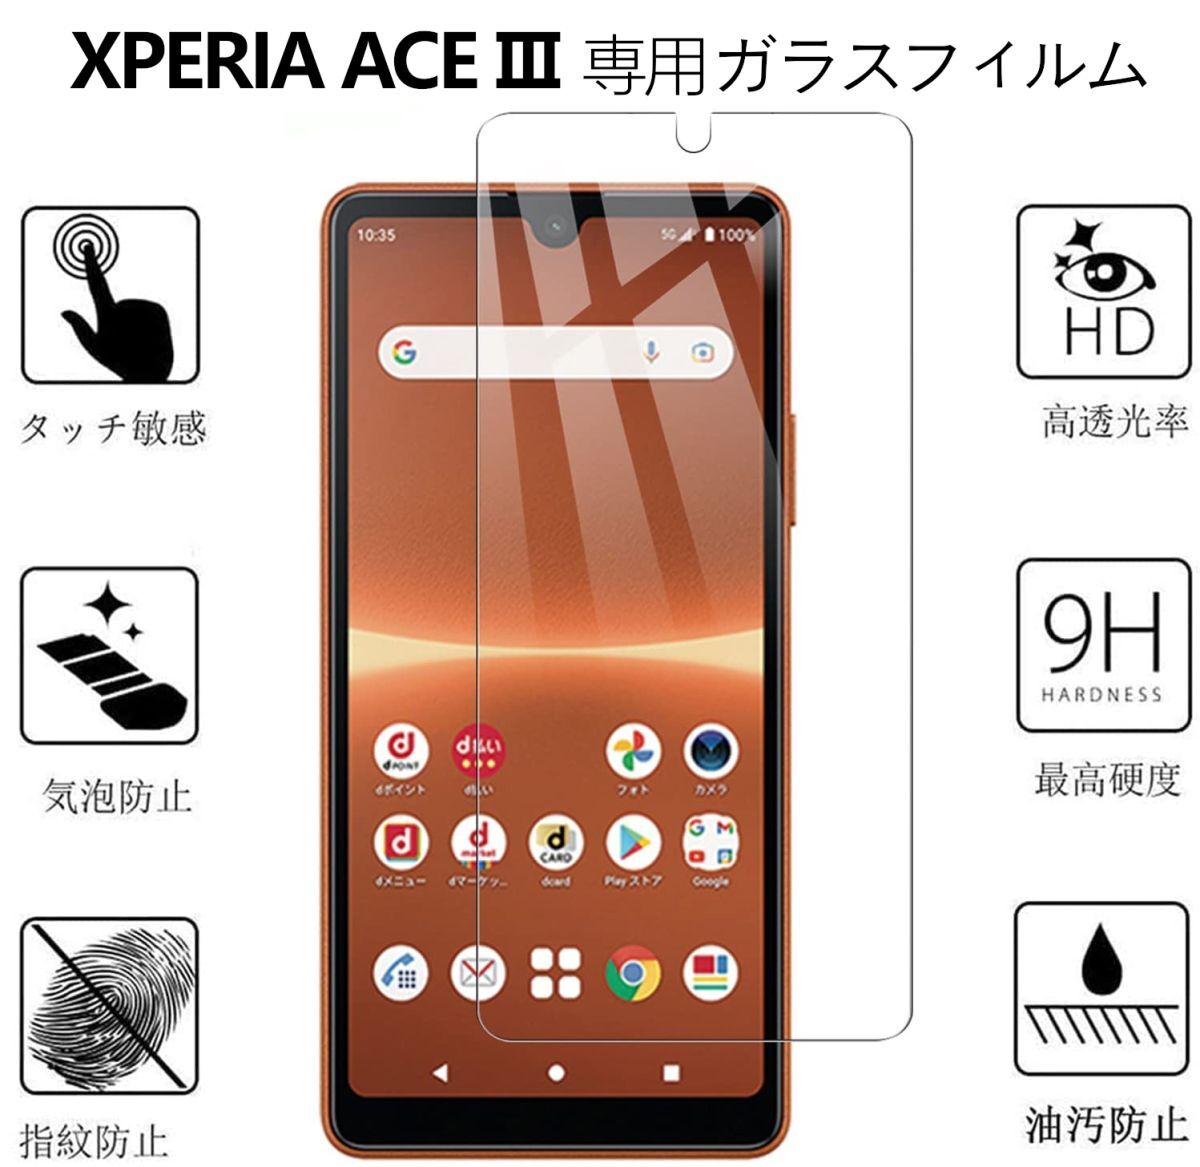 3枚組 Xperia ACE Ⅲ ガラスフィルム 即購入OK 平面保護 Xperiaace3 破損保障あり ソニーエクスペリアエースマークスリー paypay 送料無料_画像10